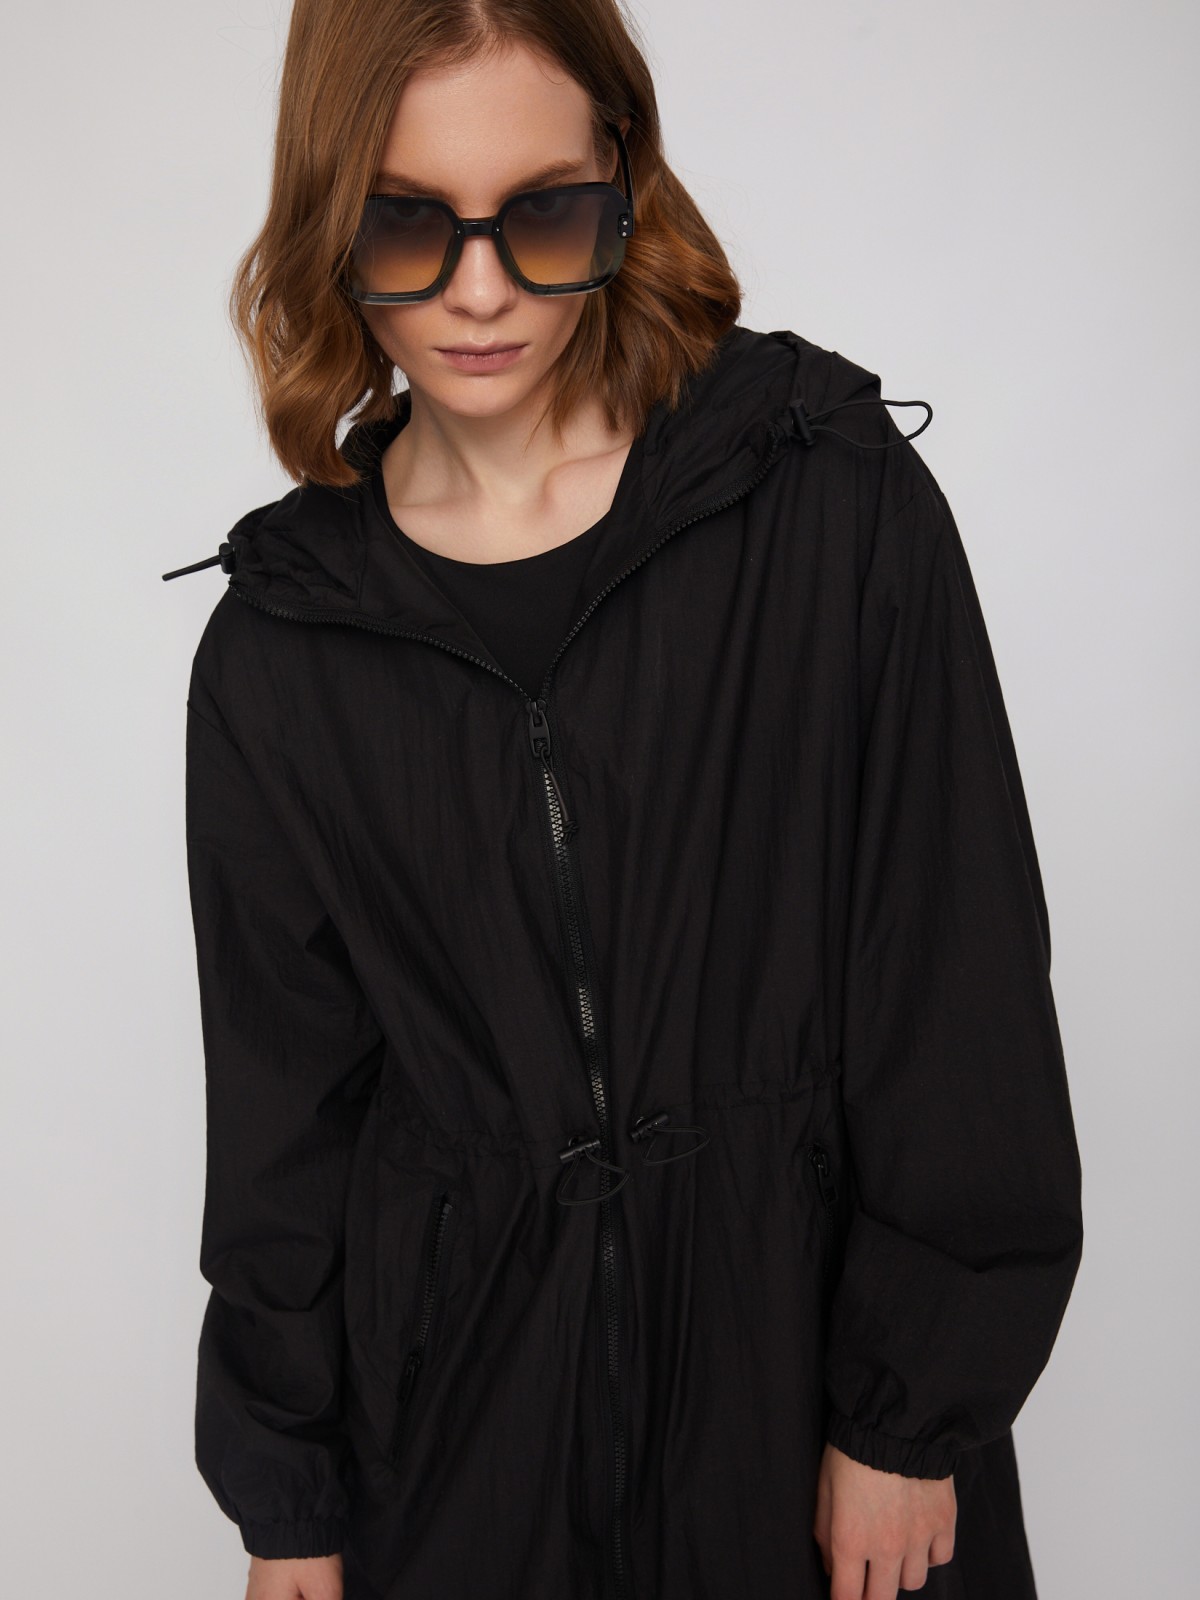 Длинная куртка-парка с капюшоном и кулиской zolla 024215702084, цвет черный, размер XL - фото 4